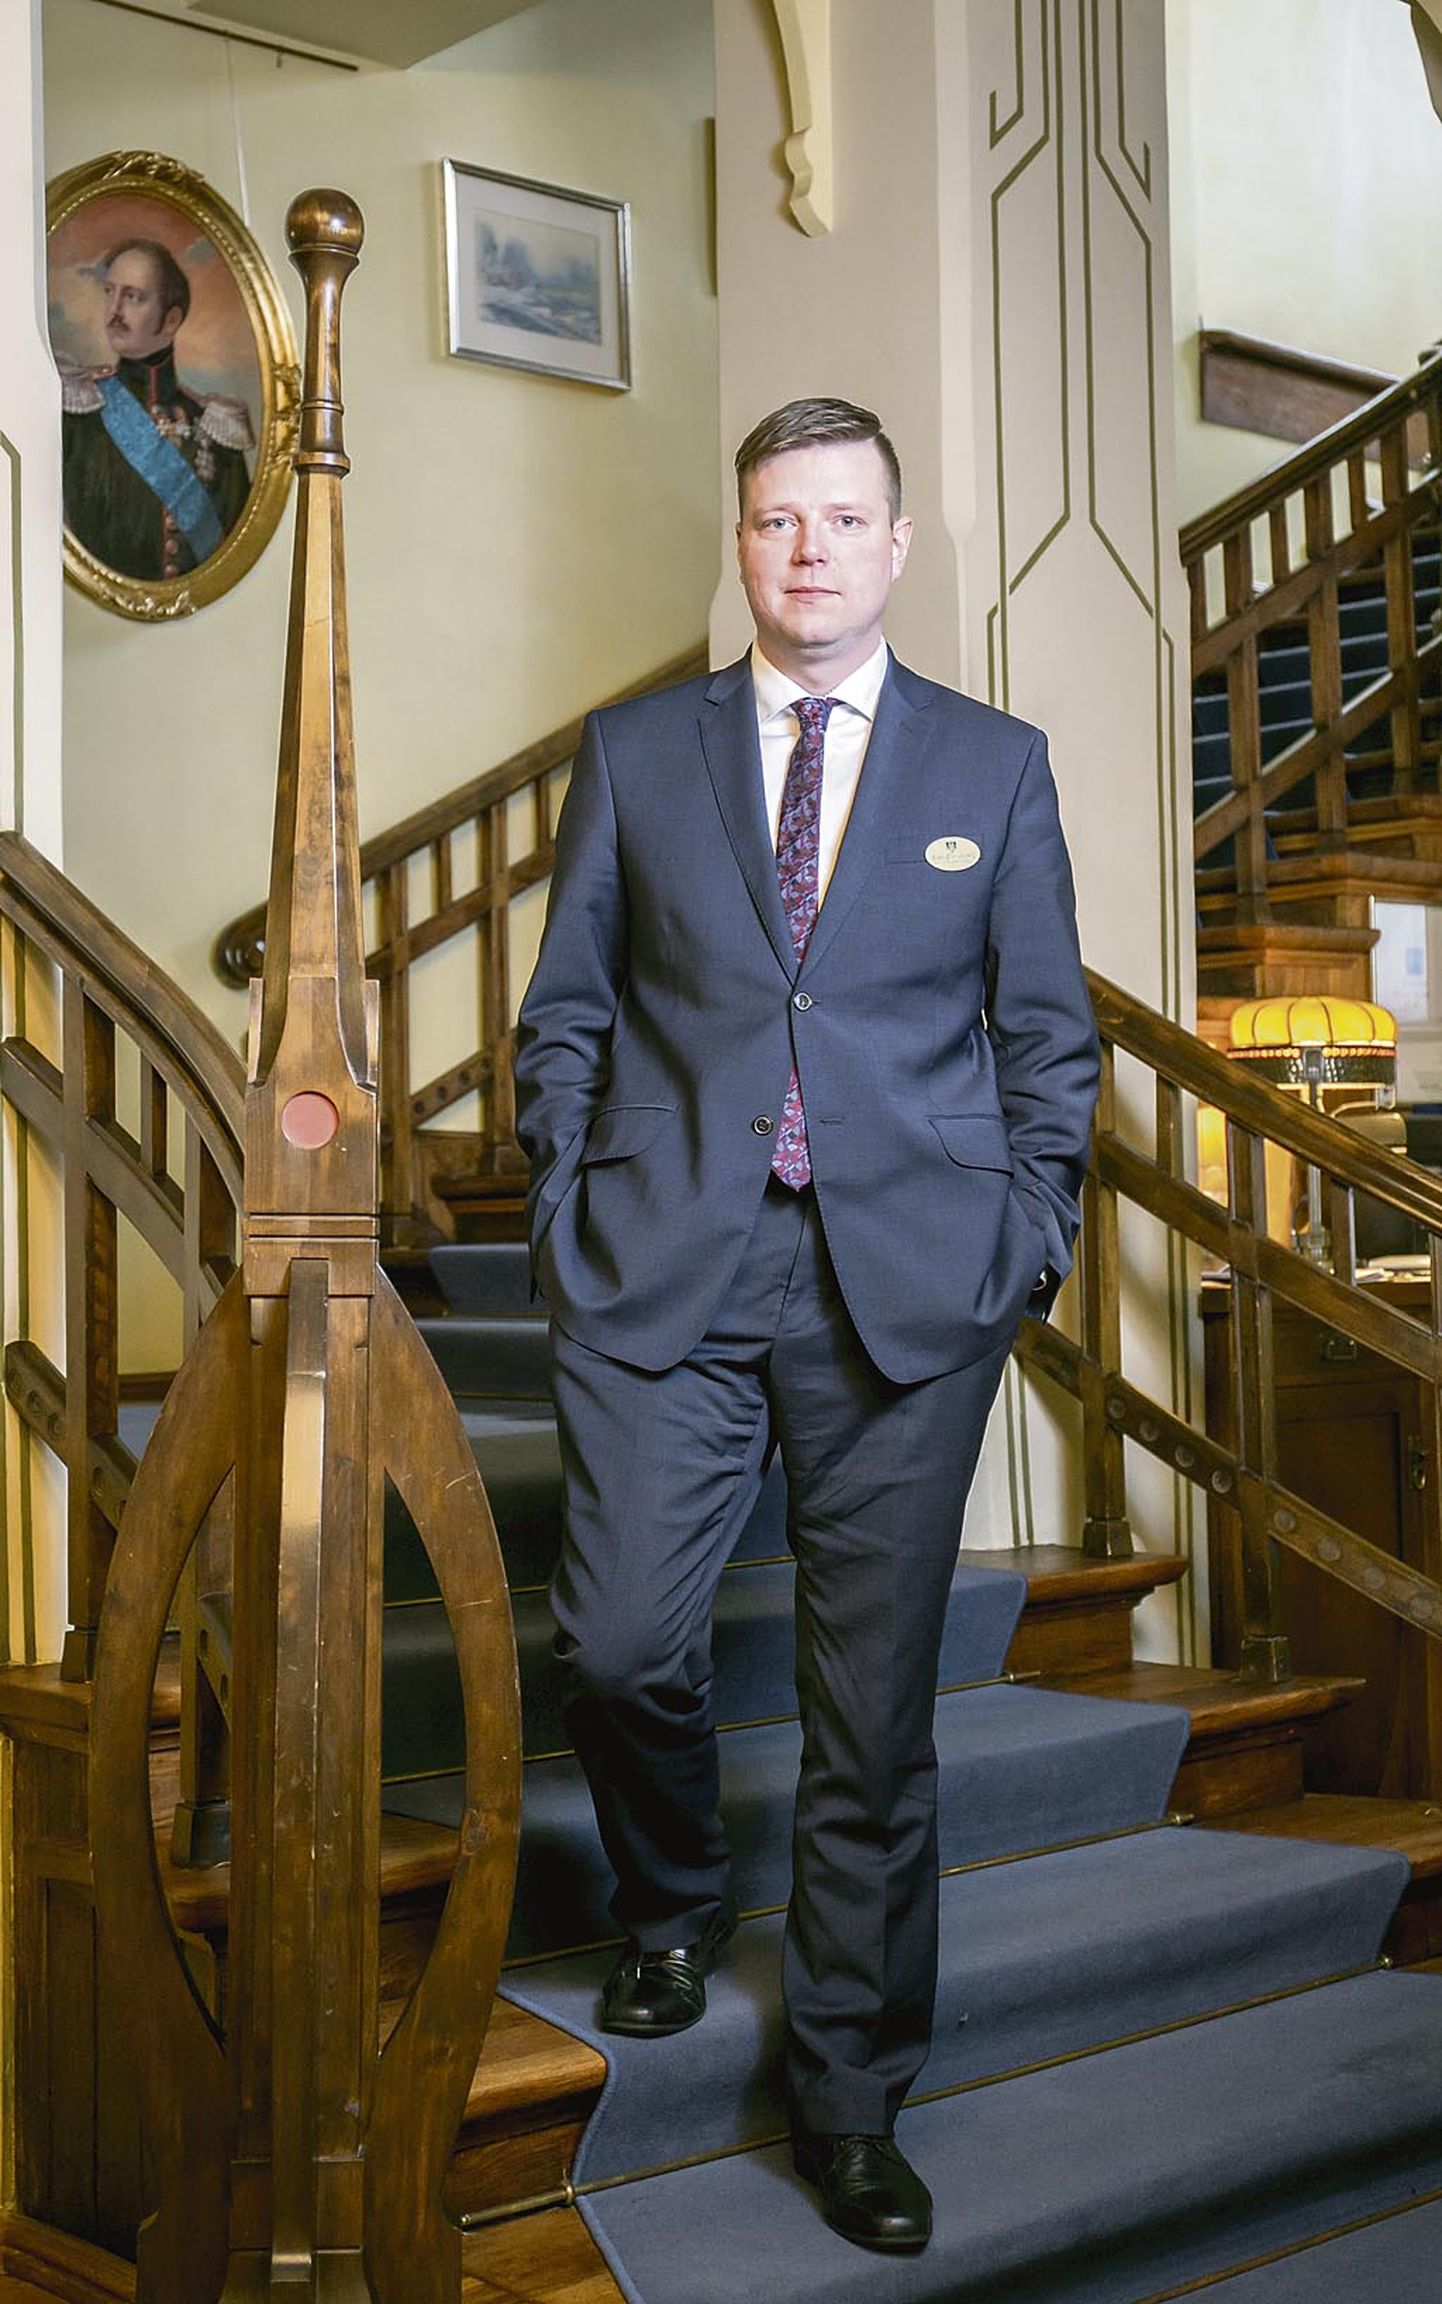 Ammende villa uus juht Sven-Erik Volberg on alustanud enda karjääri selles Euroopa ühes ajaloolisemas hotellis kõige madalamalt astmelt ja liikunud samm-sammult üles.